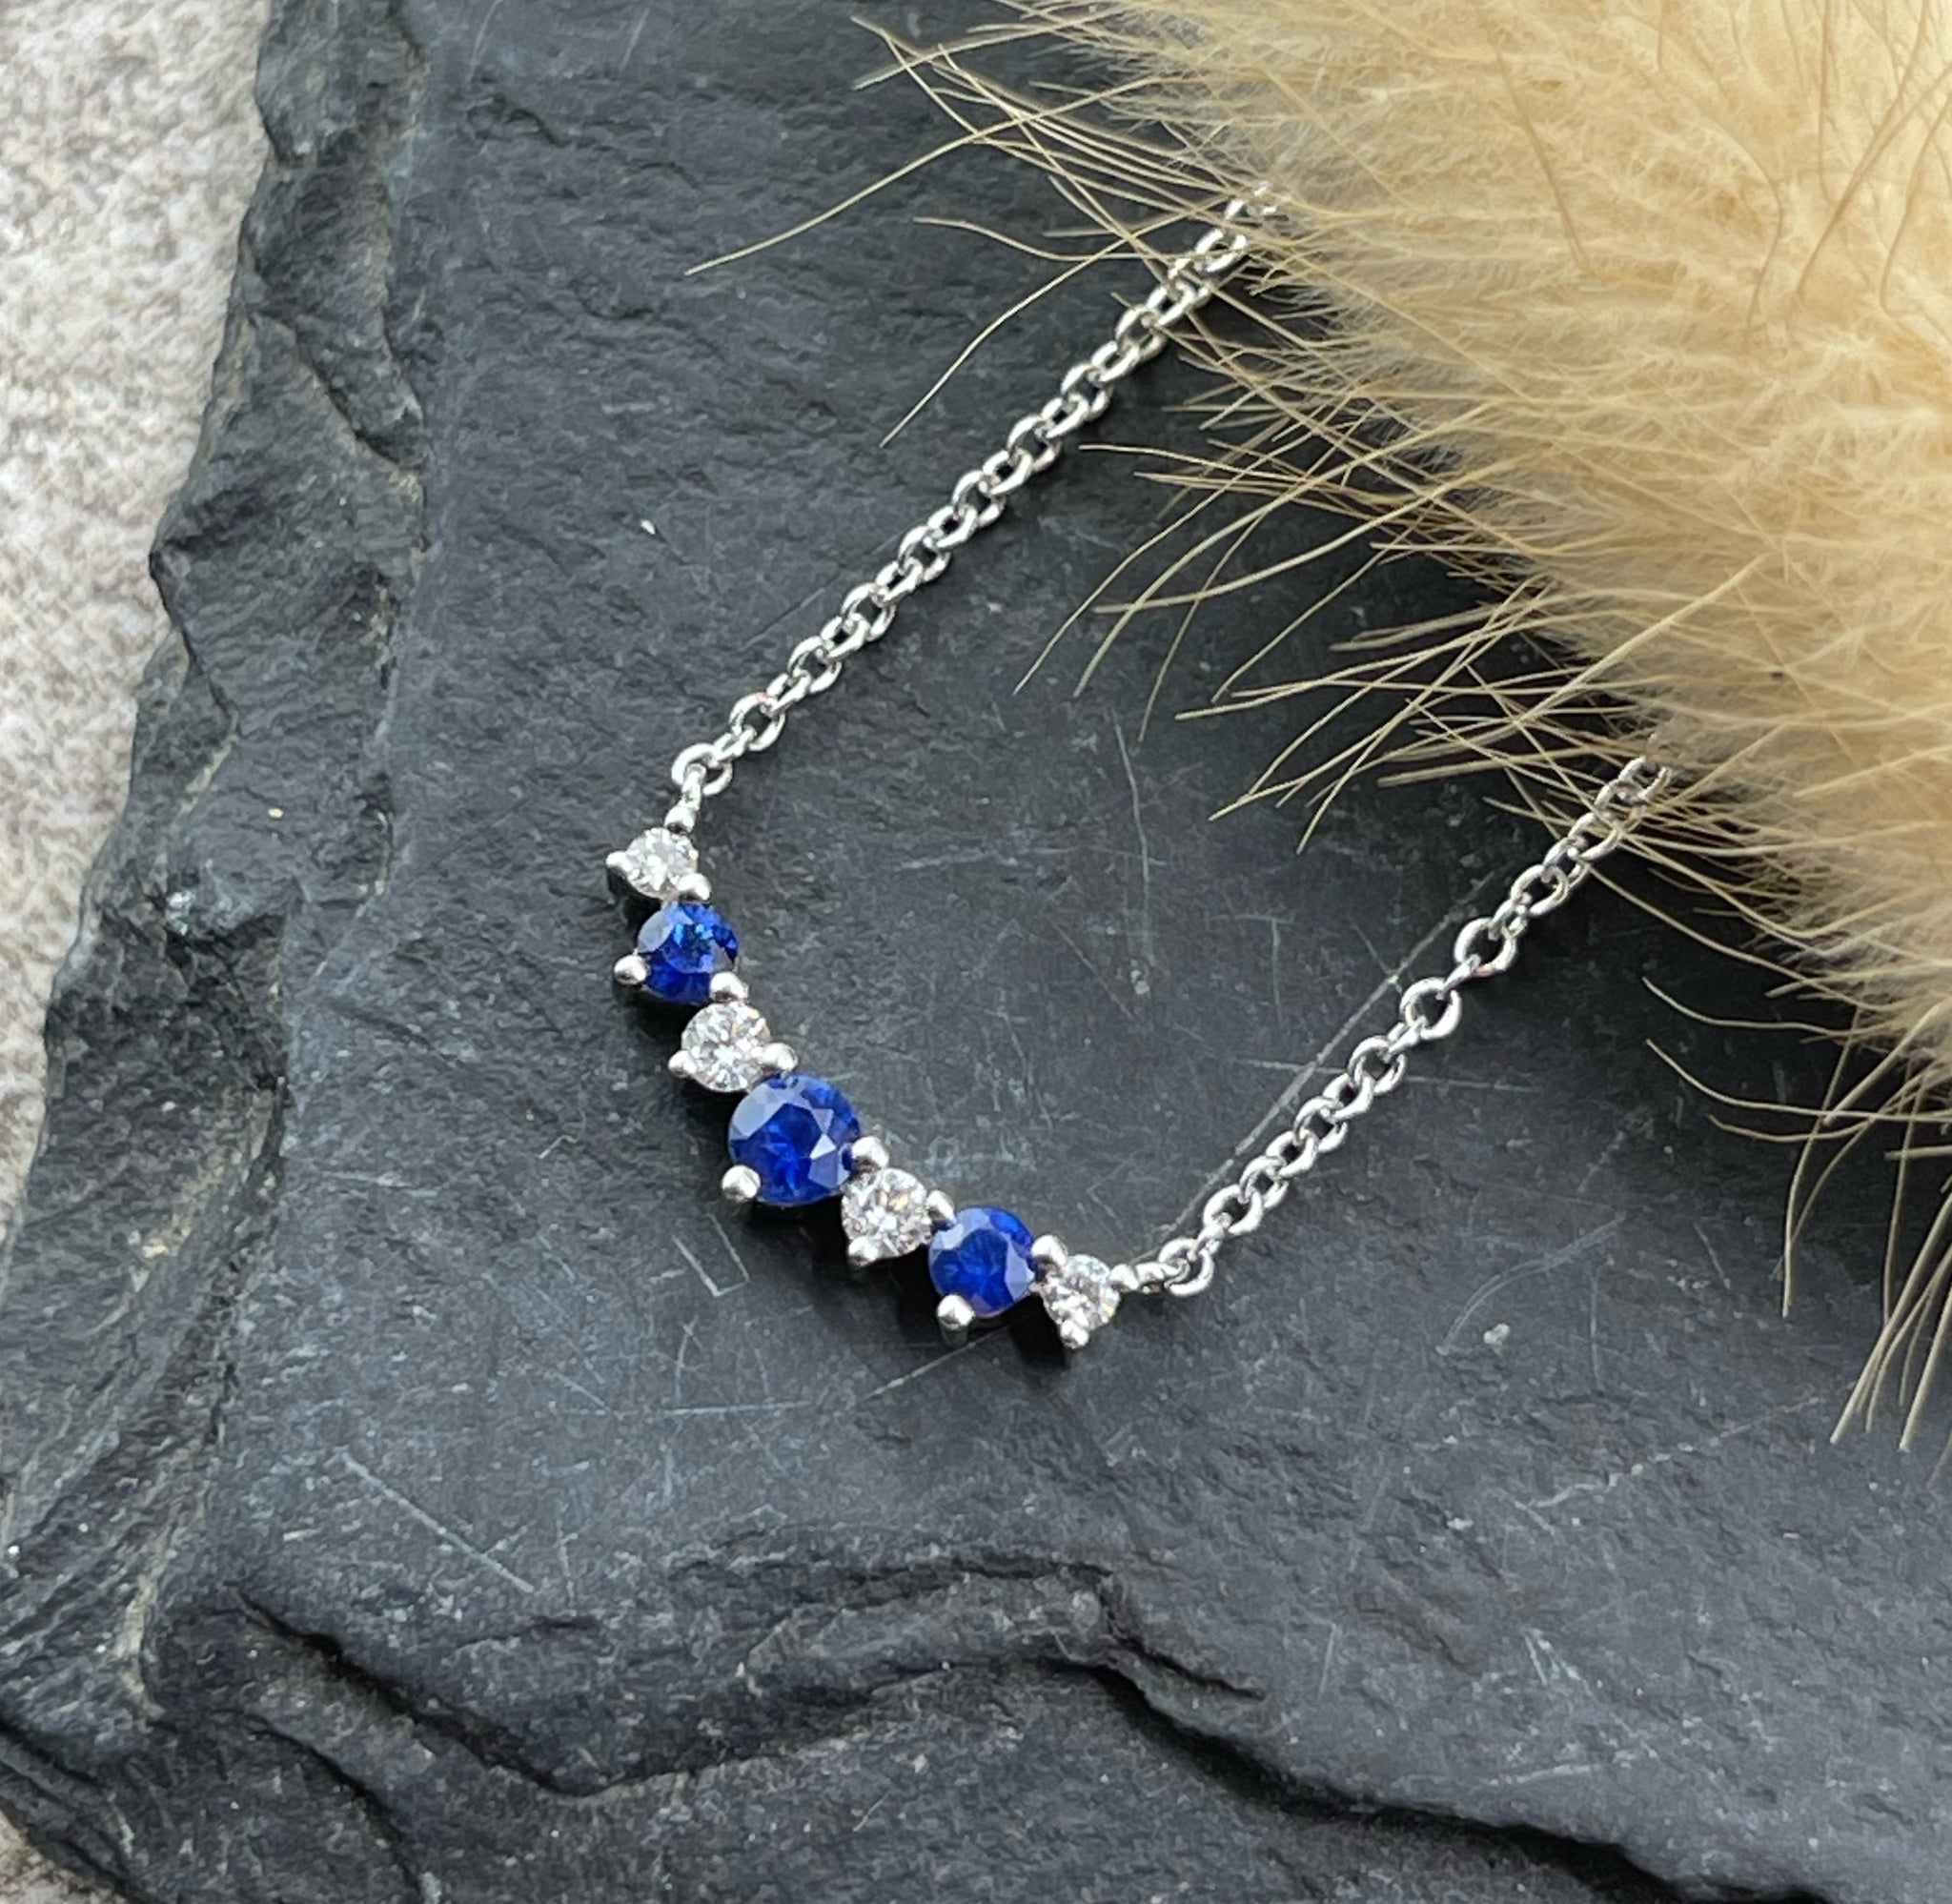 Sapphire and diamond tiara pendant